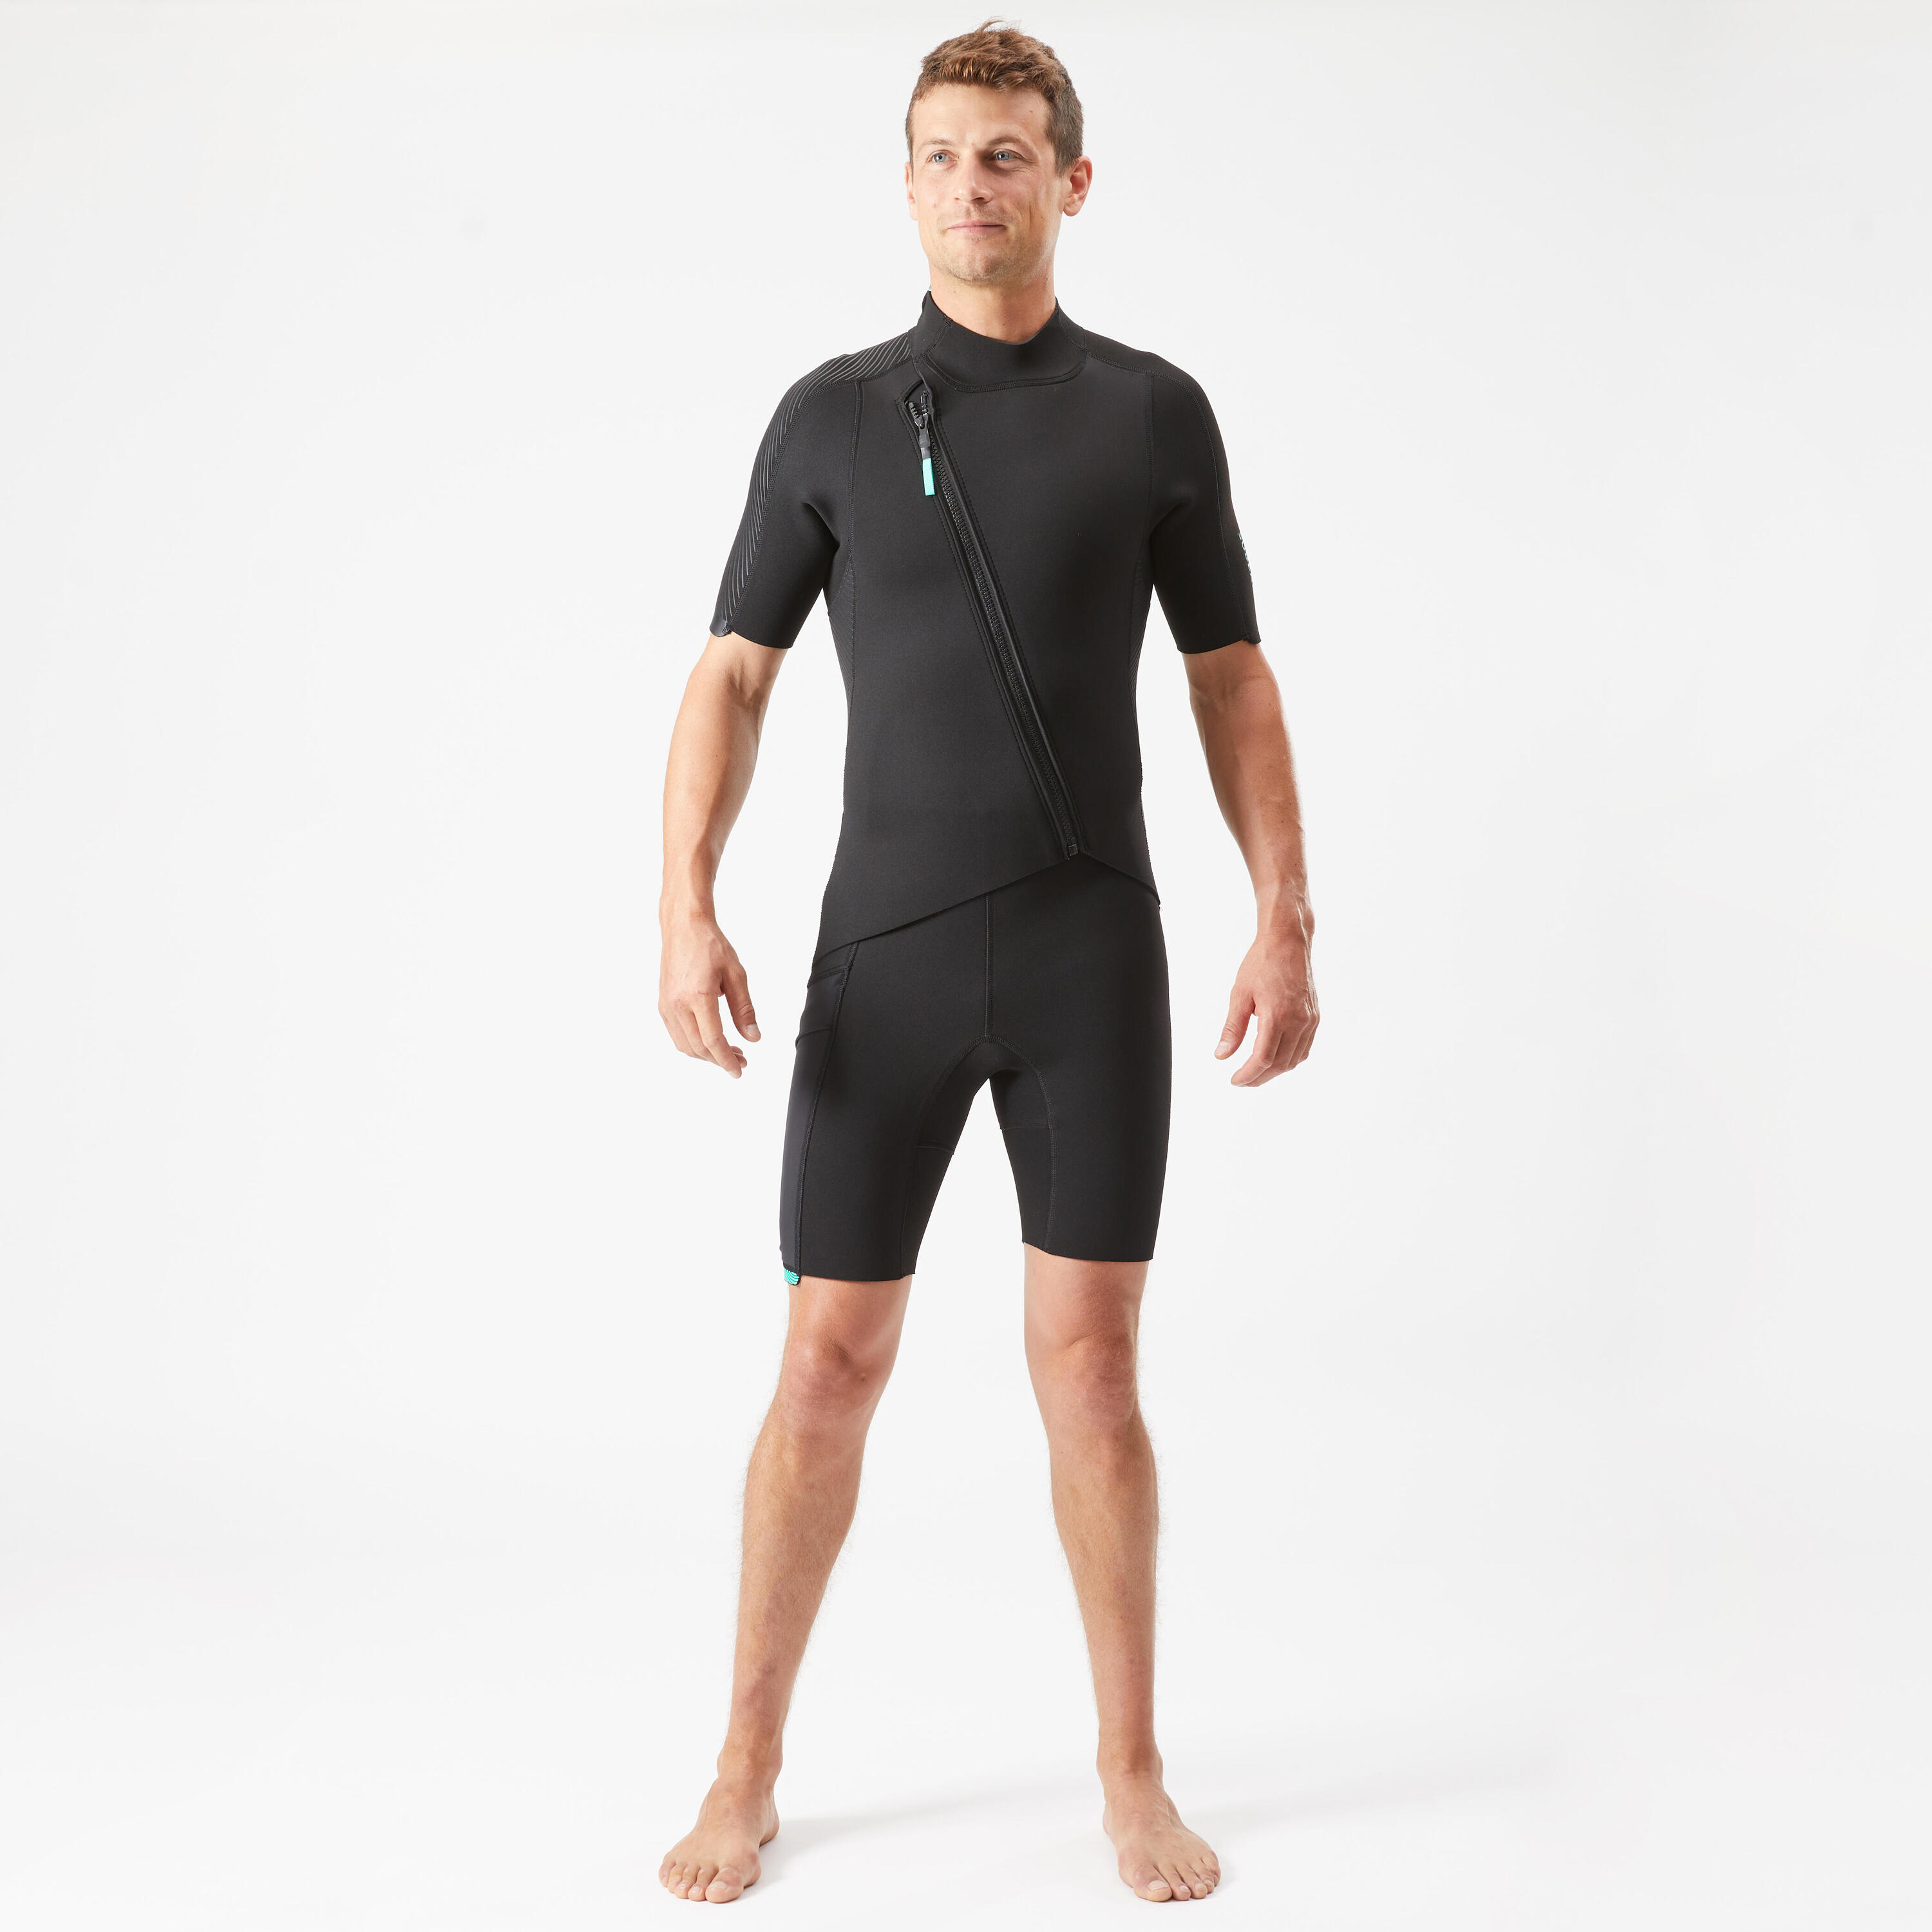 Men's 2 mm neoprene shorty wetsuit with diagonal front zip Easy 1/14